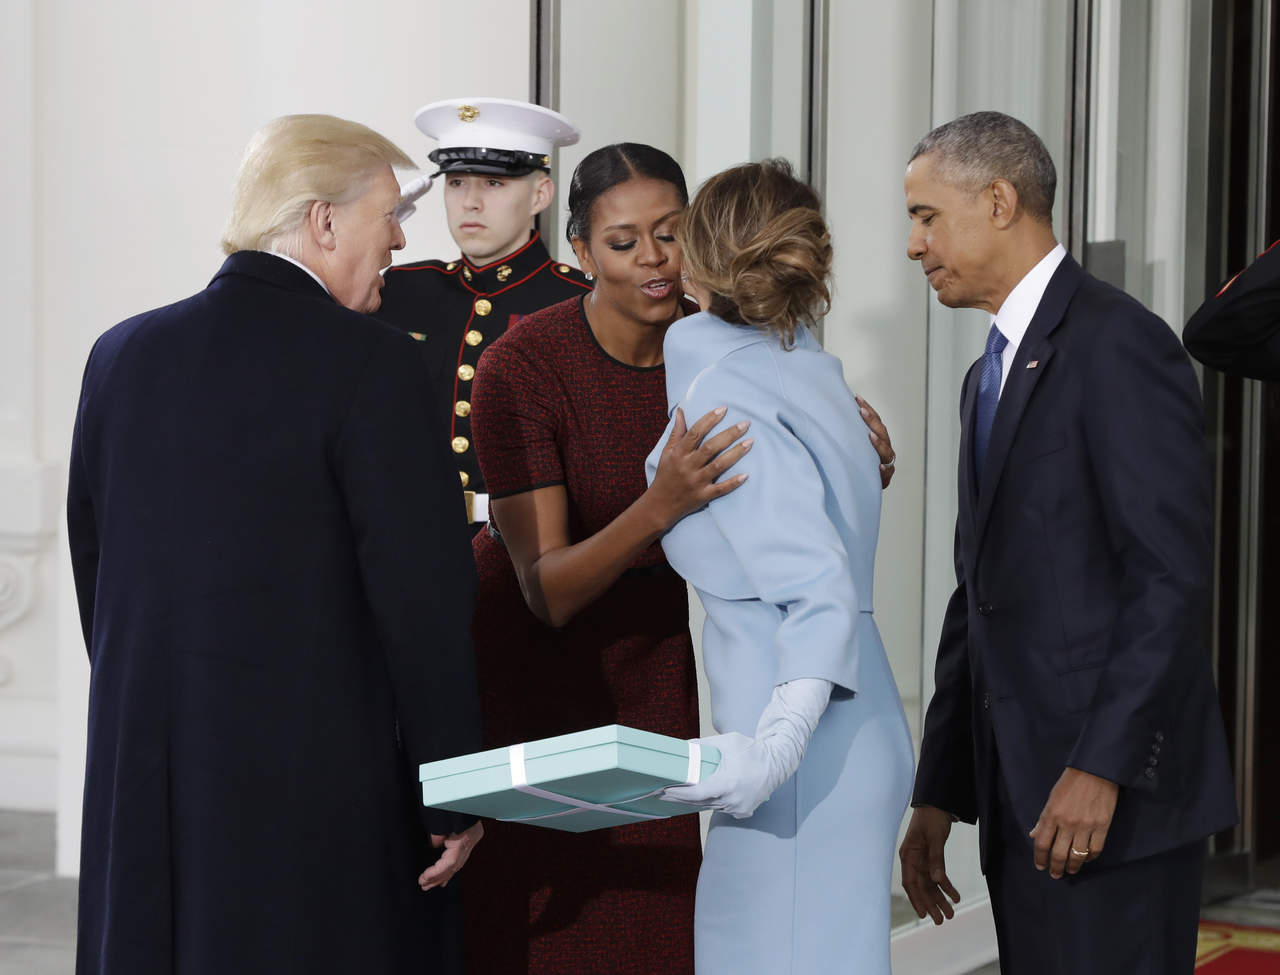 Ese intercambio formal el día que el presidente Donald Trump asumió el cargo fue algo incómodo, le dijo Michelle Obama a la conductora televisiva Ellen DeGeneres. (AP)